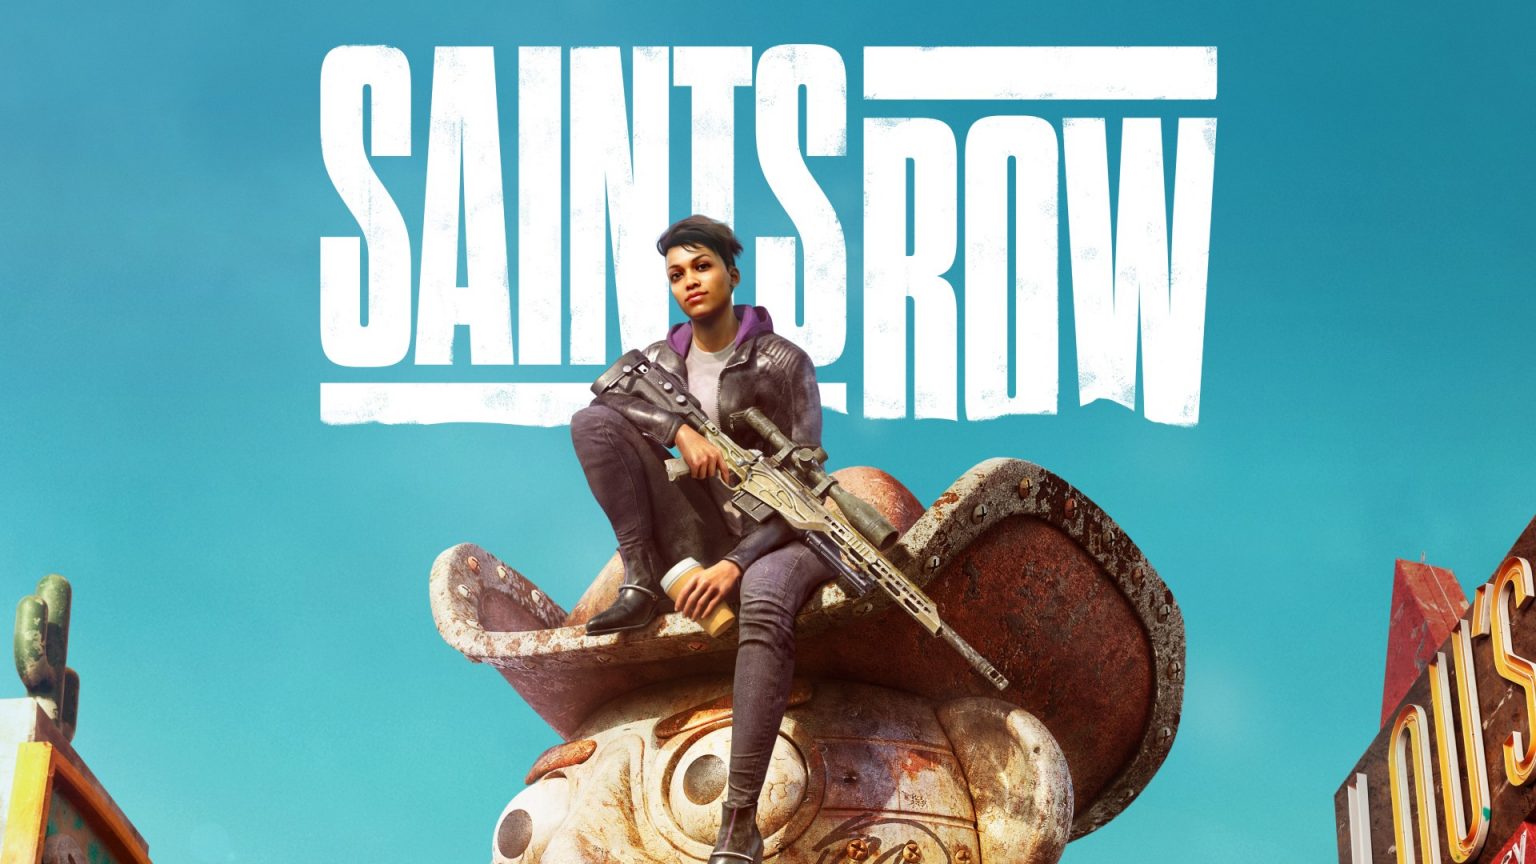 Łączna sprzedaż rebootu Saints Row wyniosła zaledwie 1,7 miliona egzemplarzy